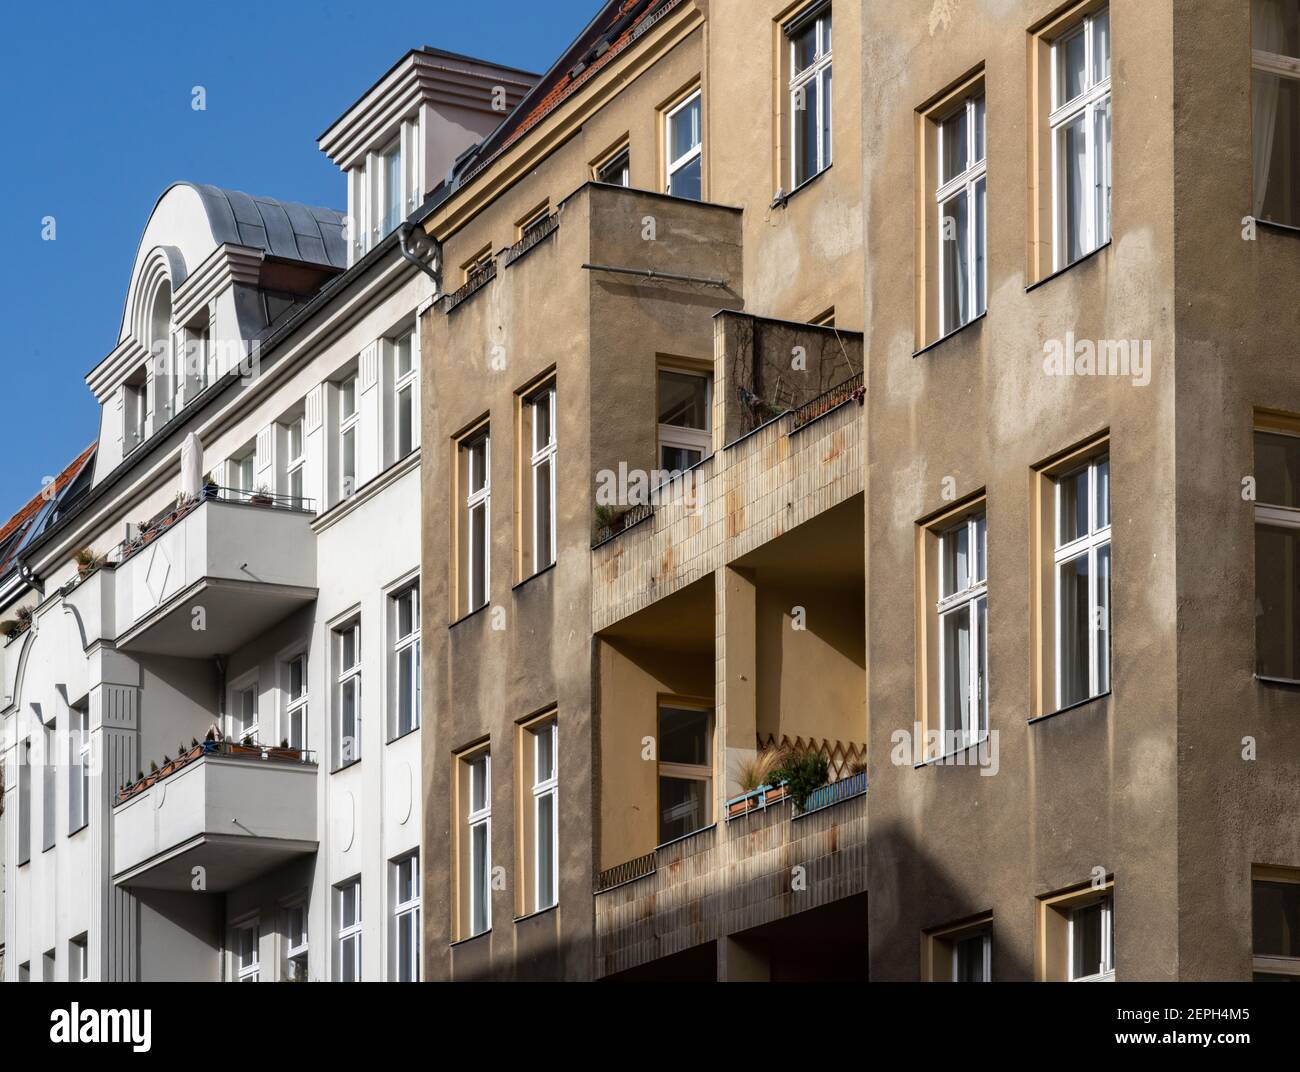 Heruntergekommenes Mietshaus neben saniertem Haus, Berlin Stock Photo